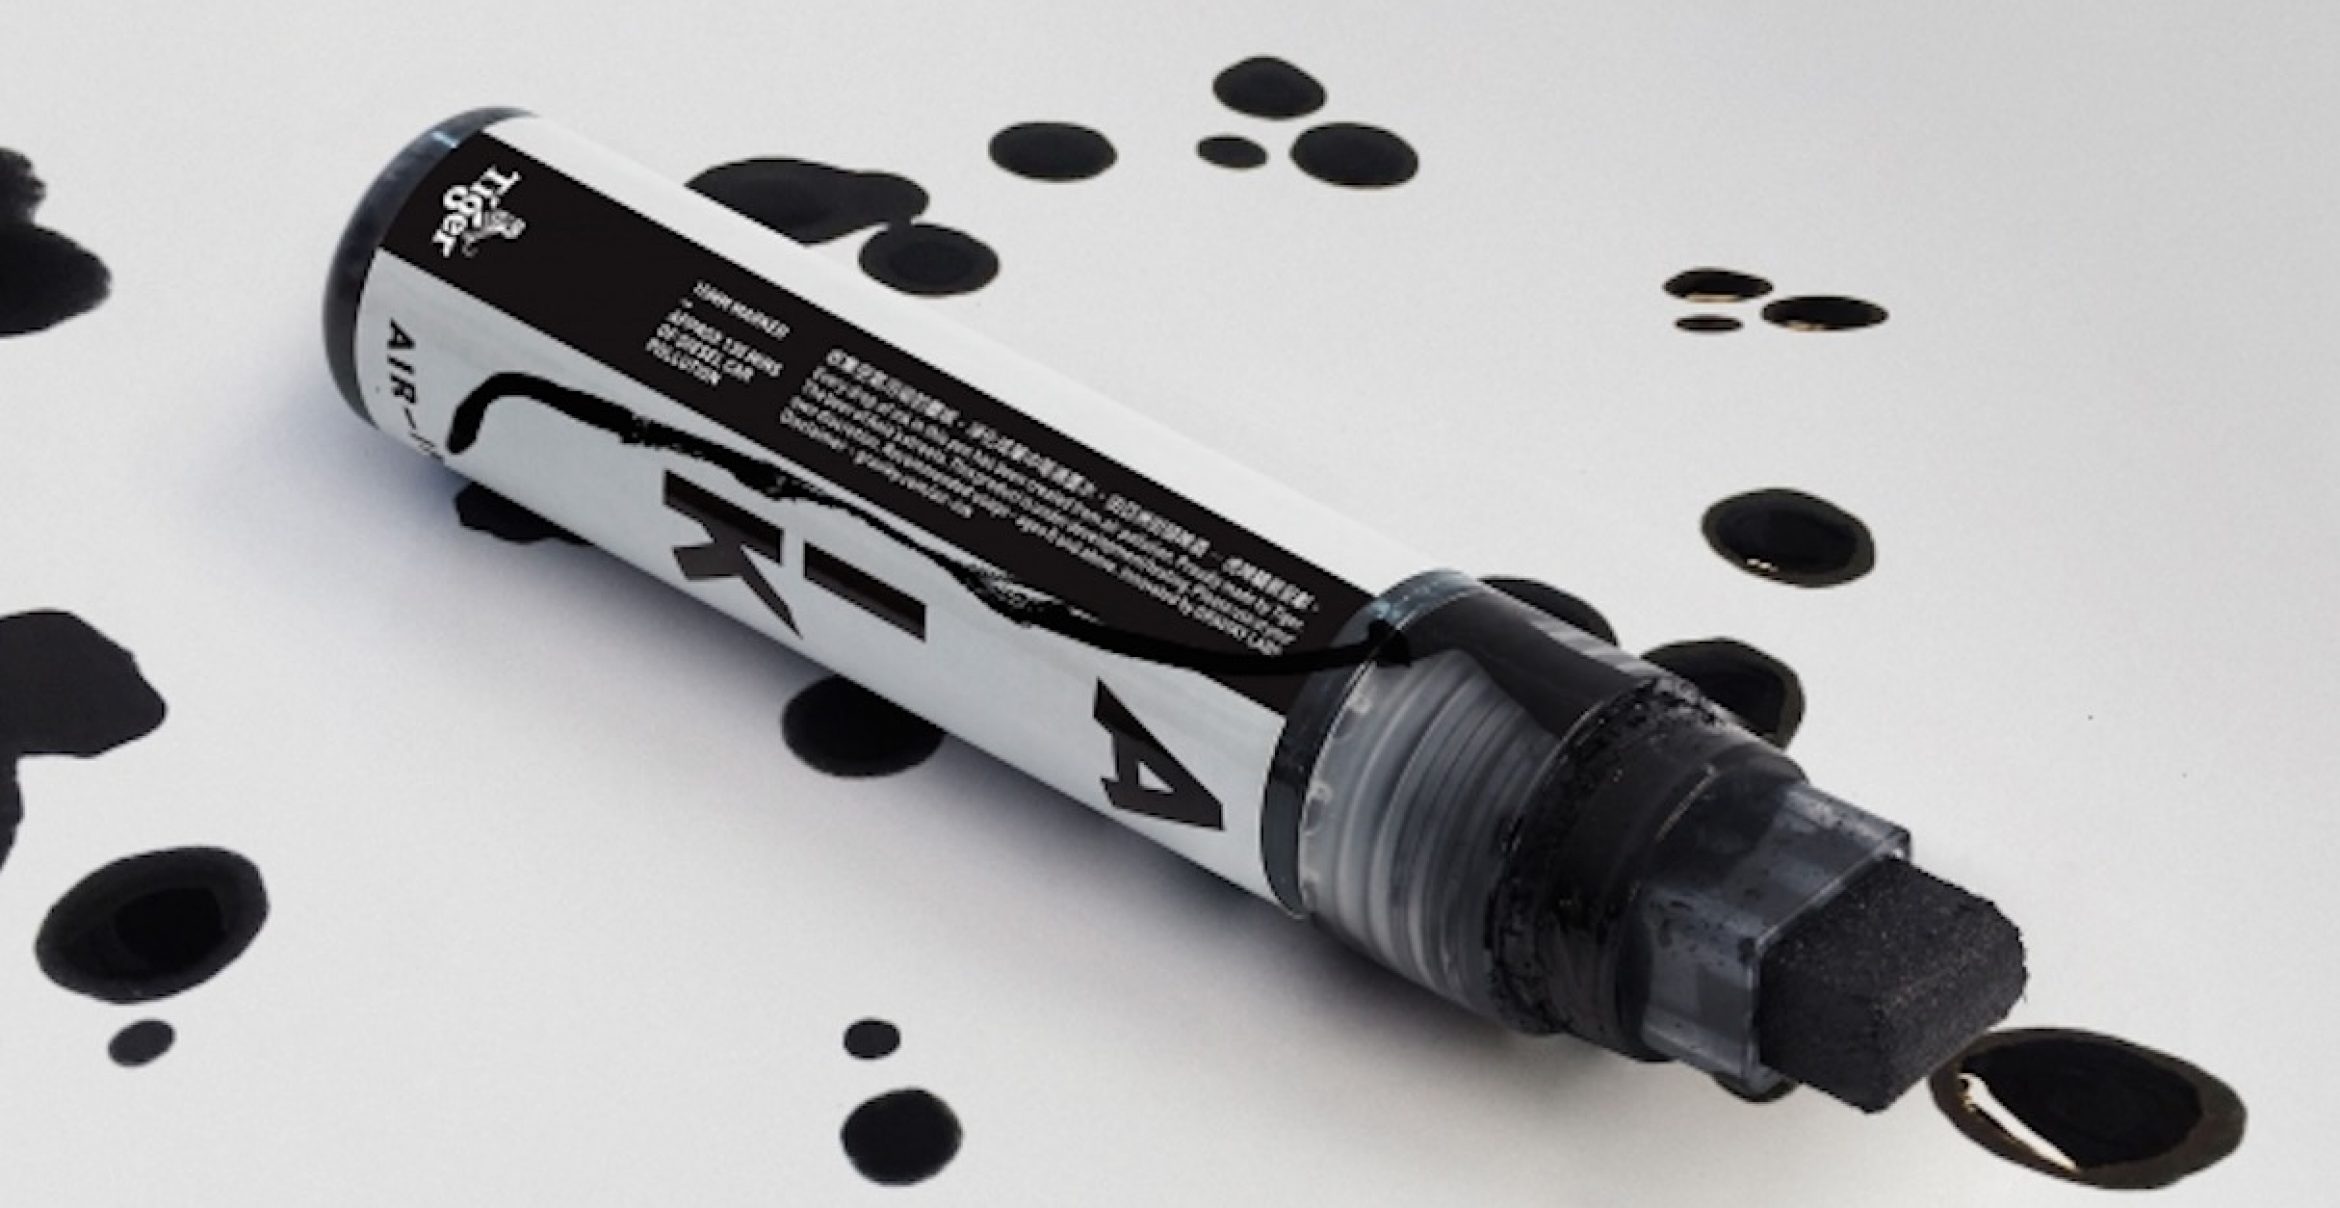 So geht Umweltschutz: Der Air-Ink Stift enhält Tinte, die aus gefilterten Abgasen entsteht